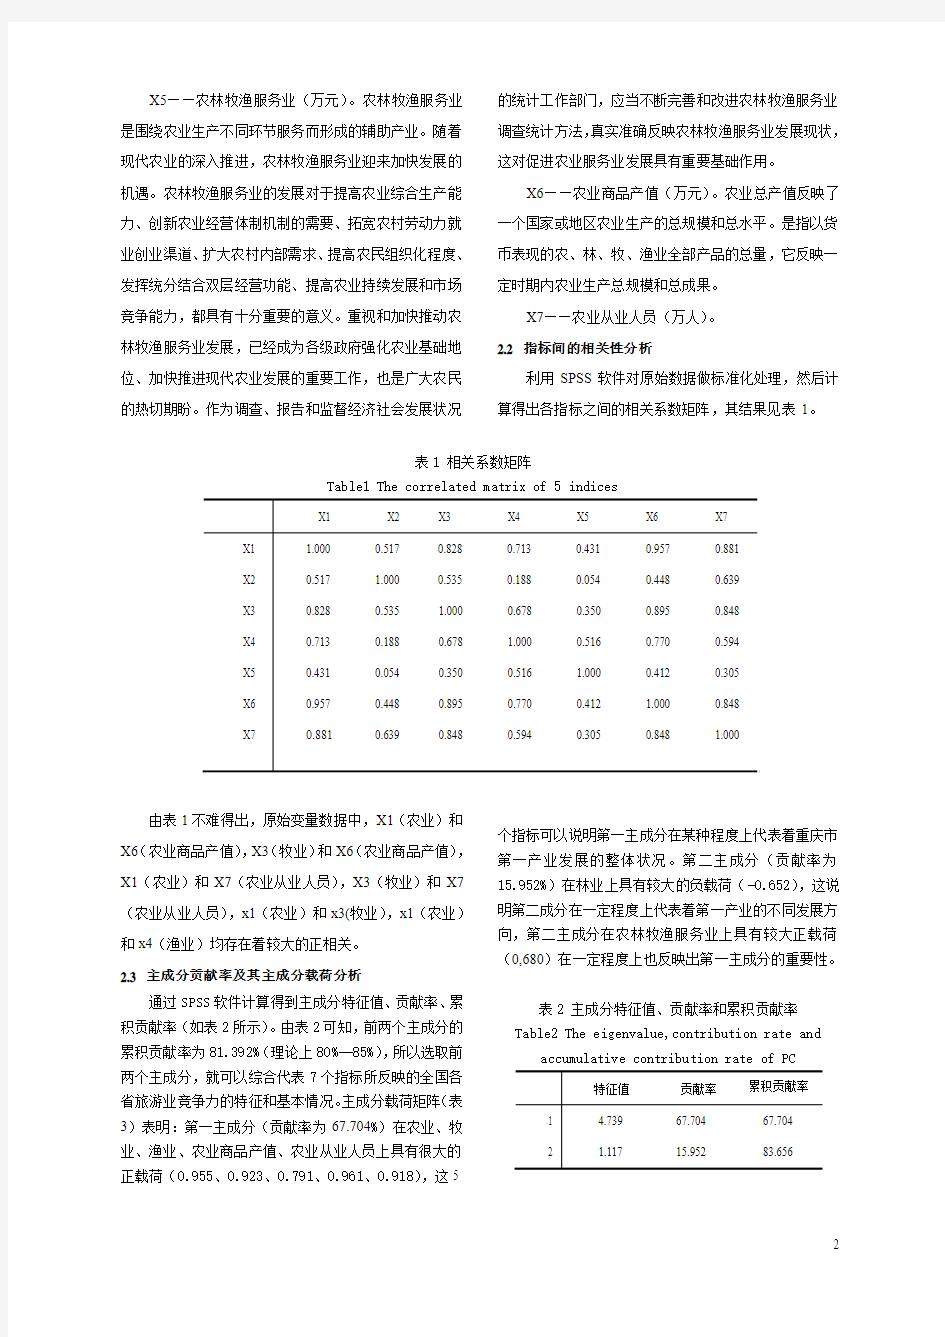 重庆市第一产业发展情况分析